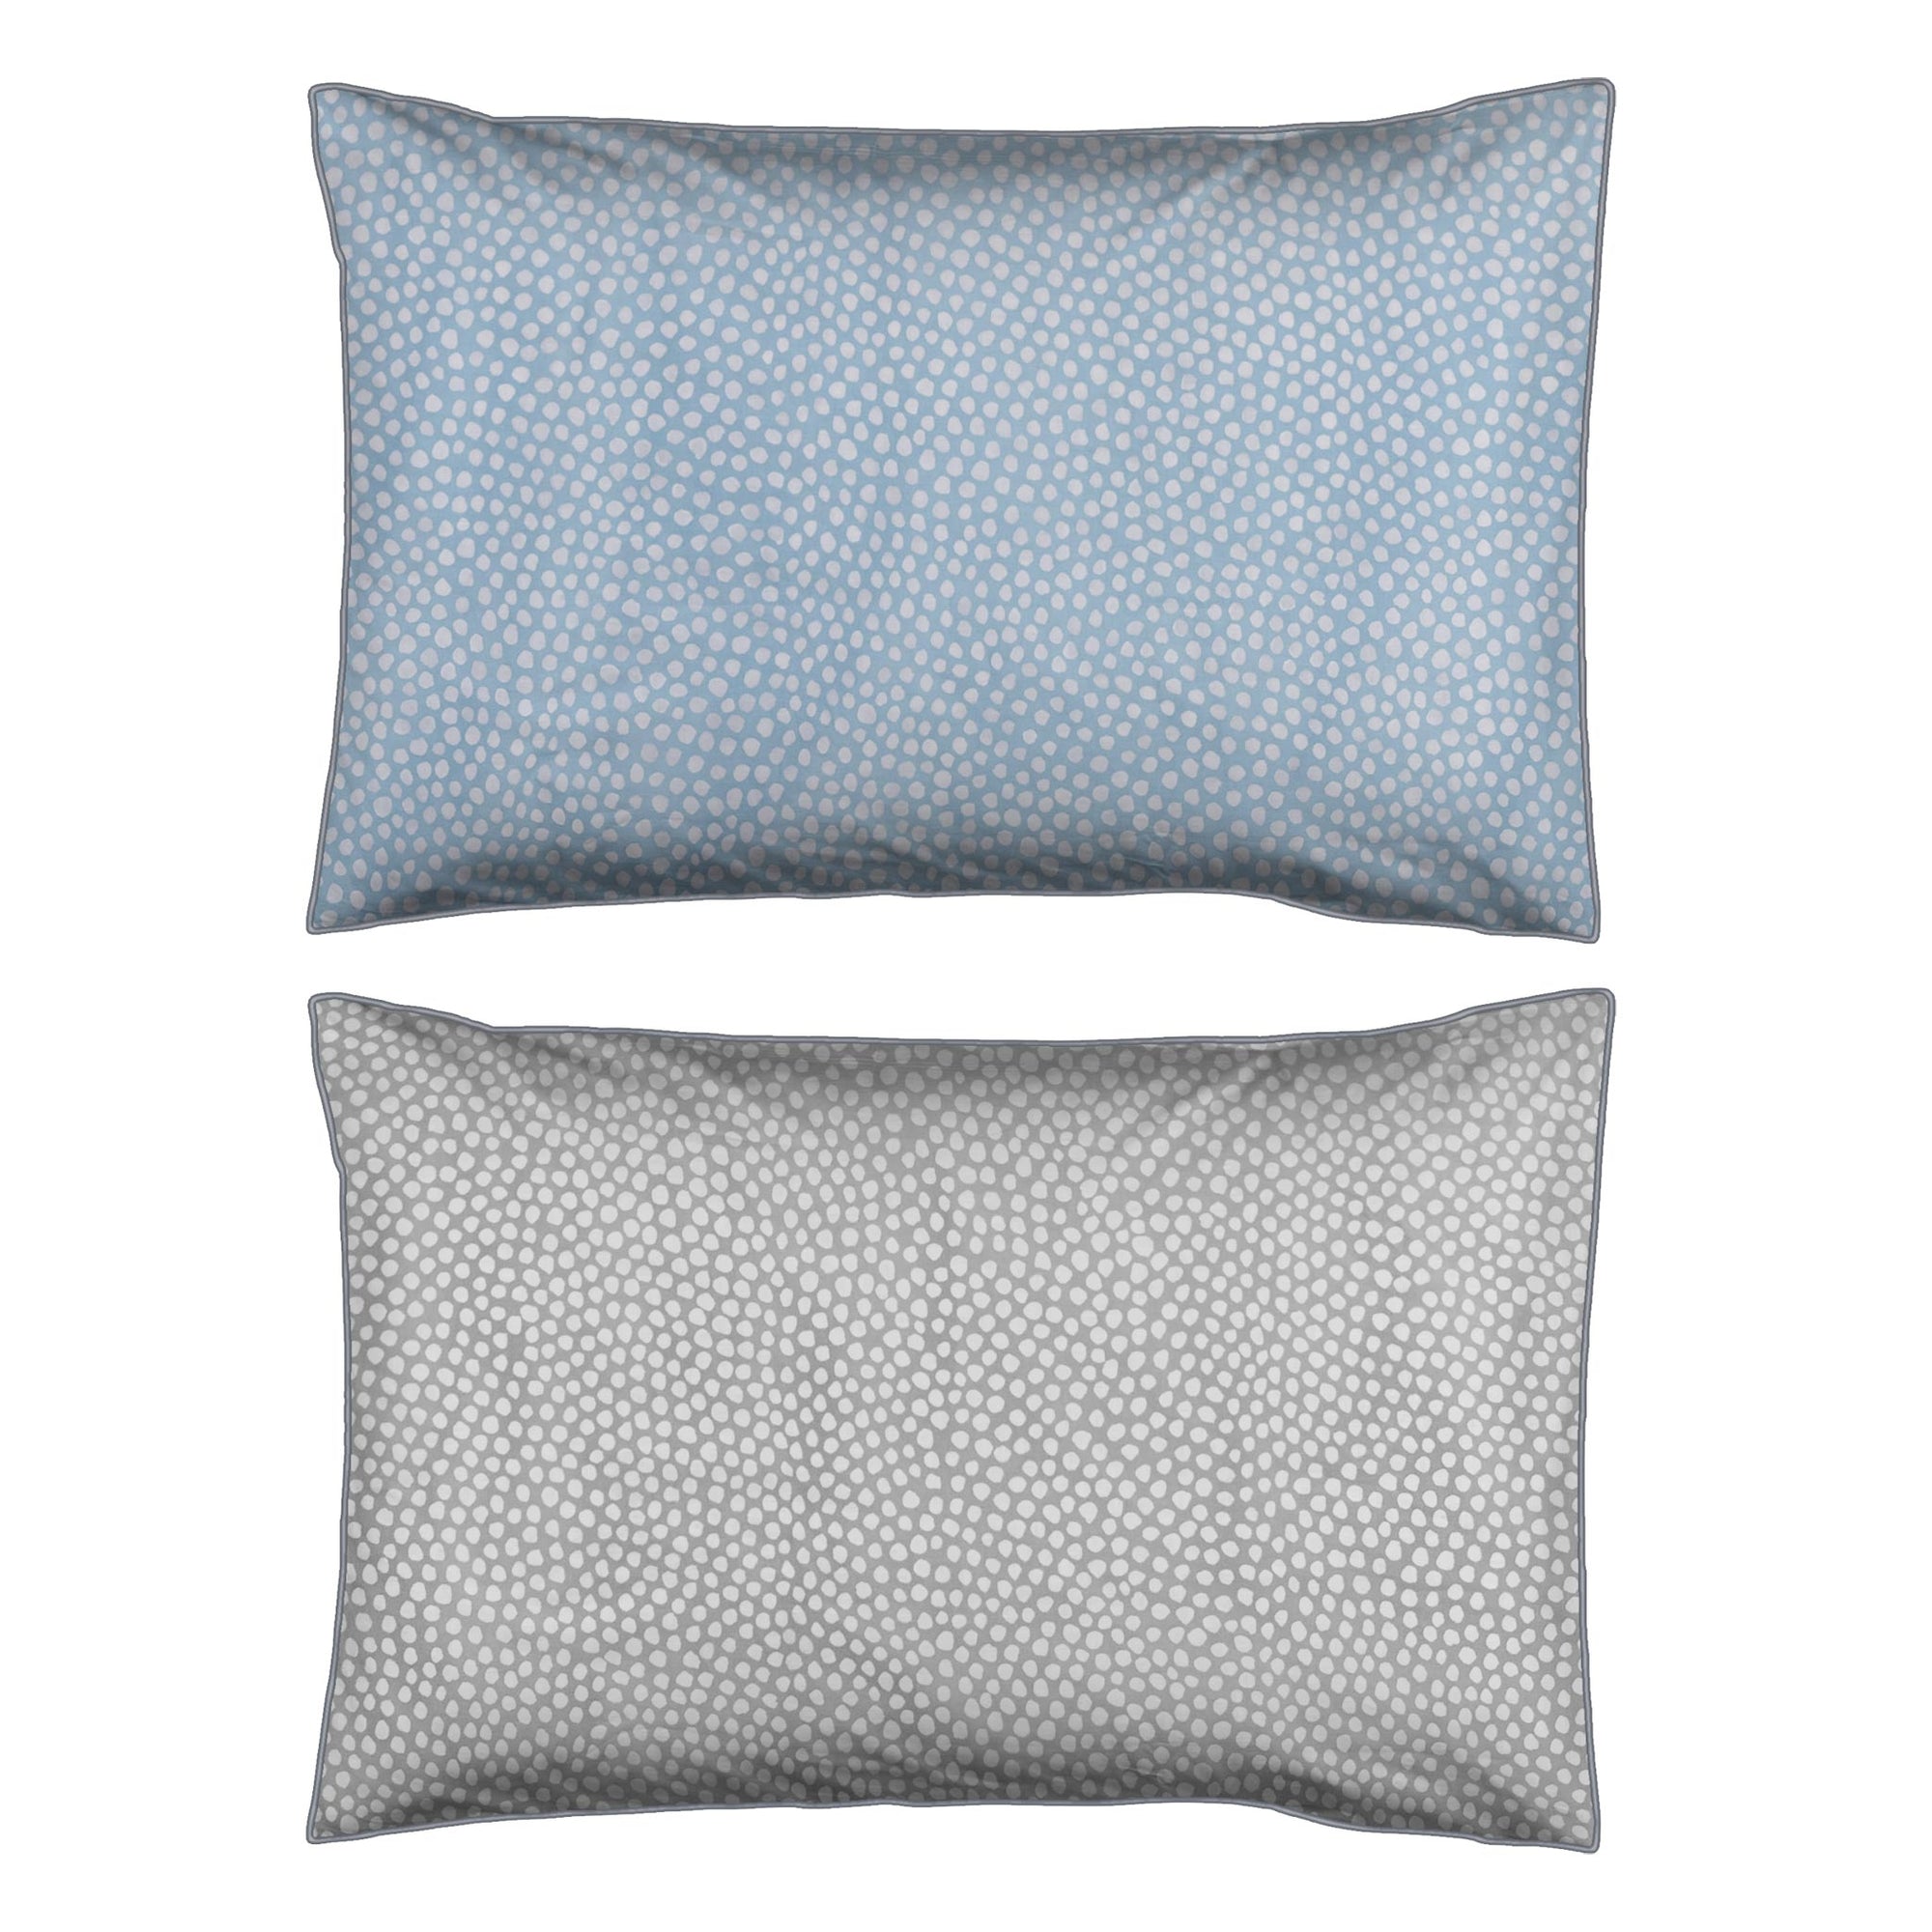 One Pair Aqua Blue Polka Dot 100% Cotton Percale 200TC Standard Pillowcase